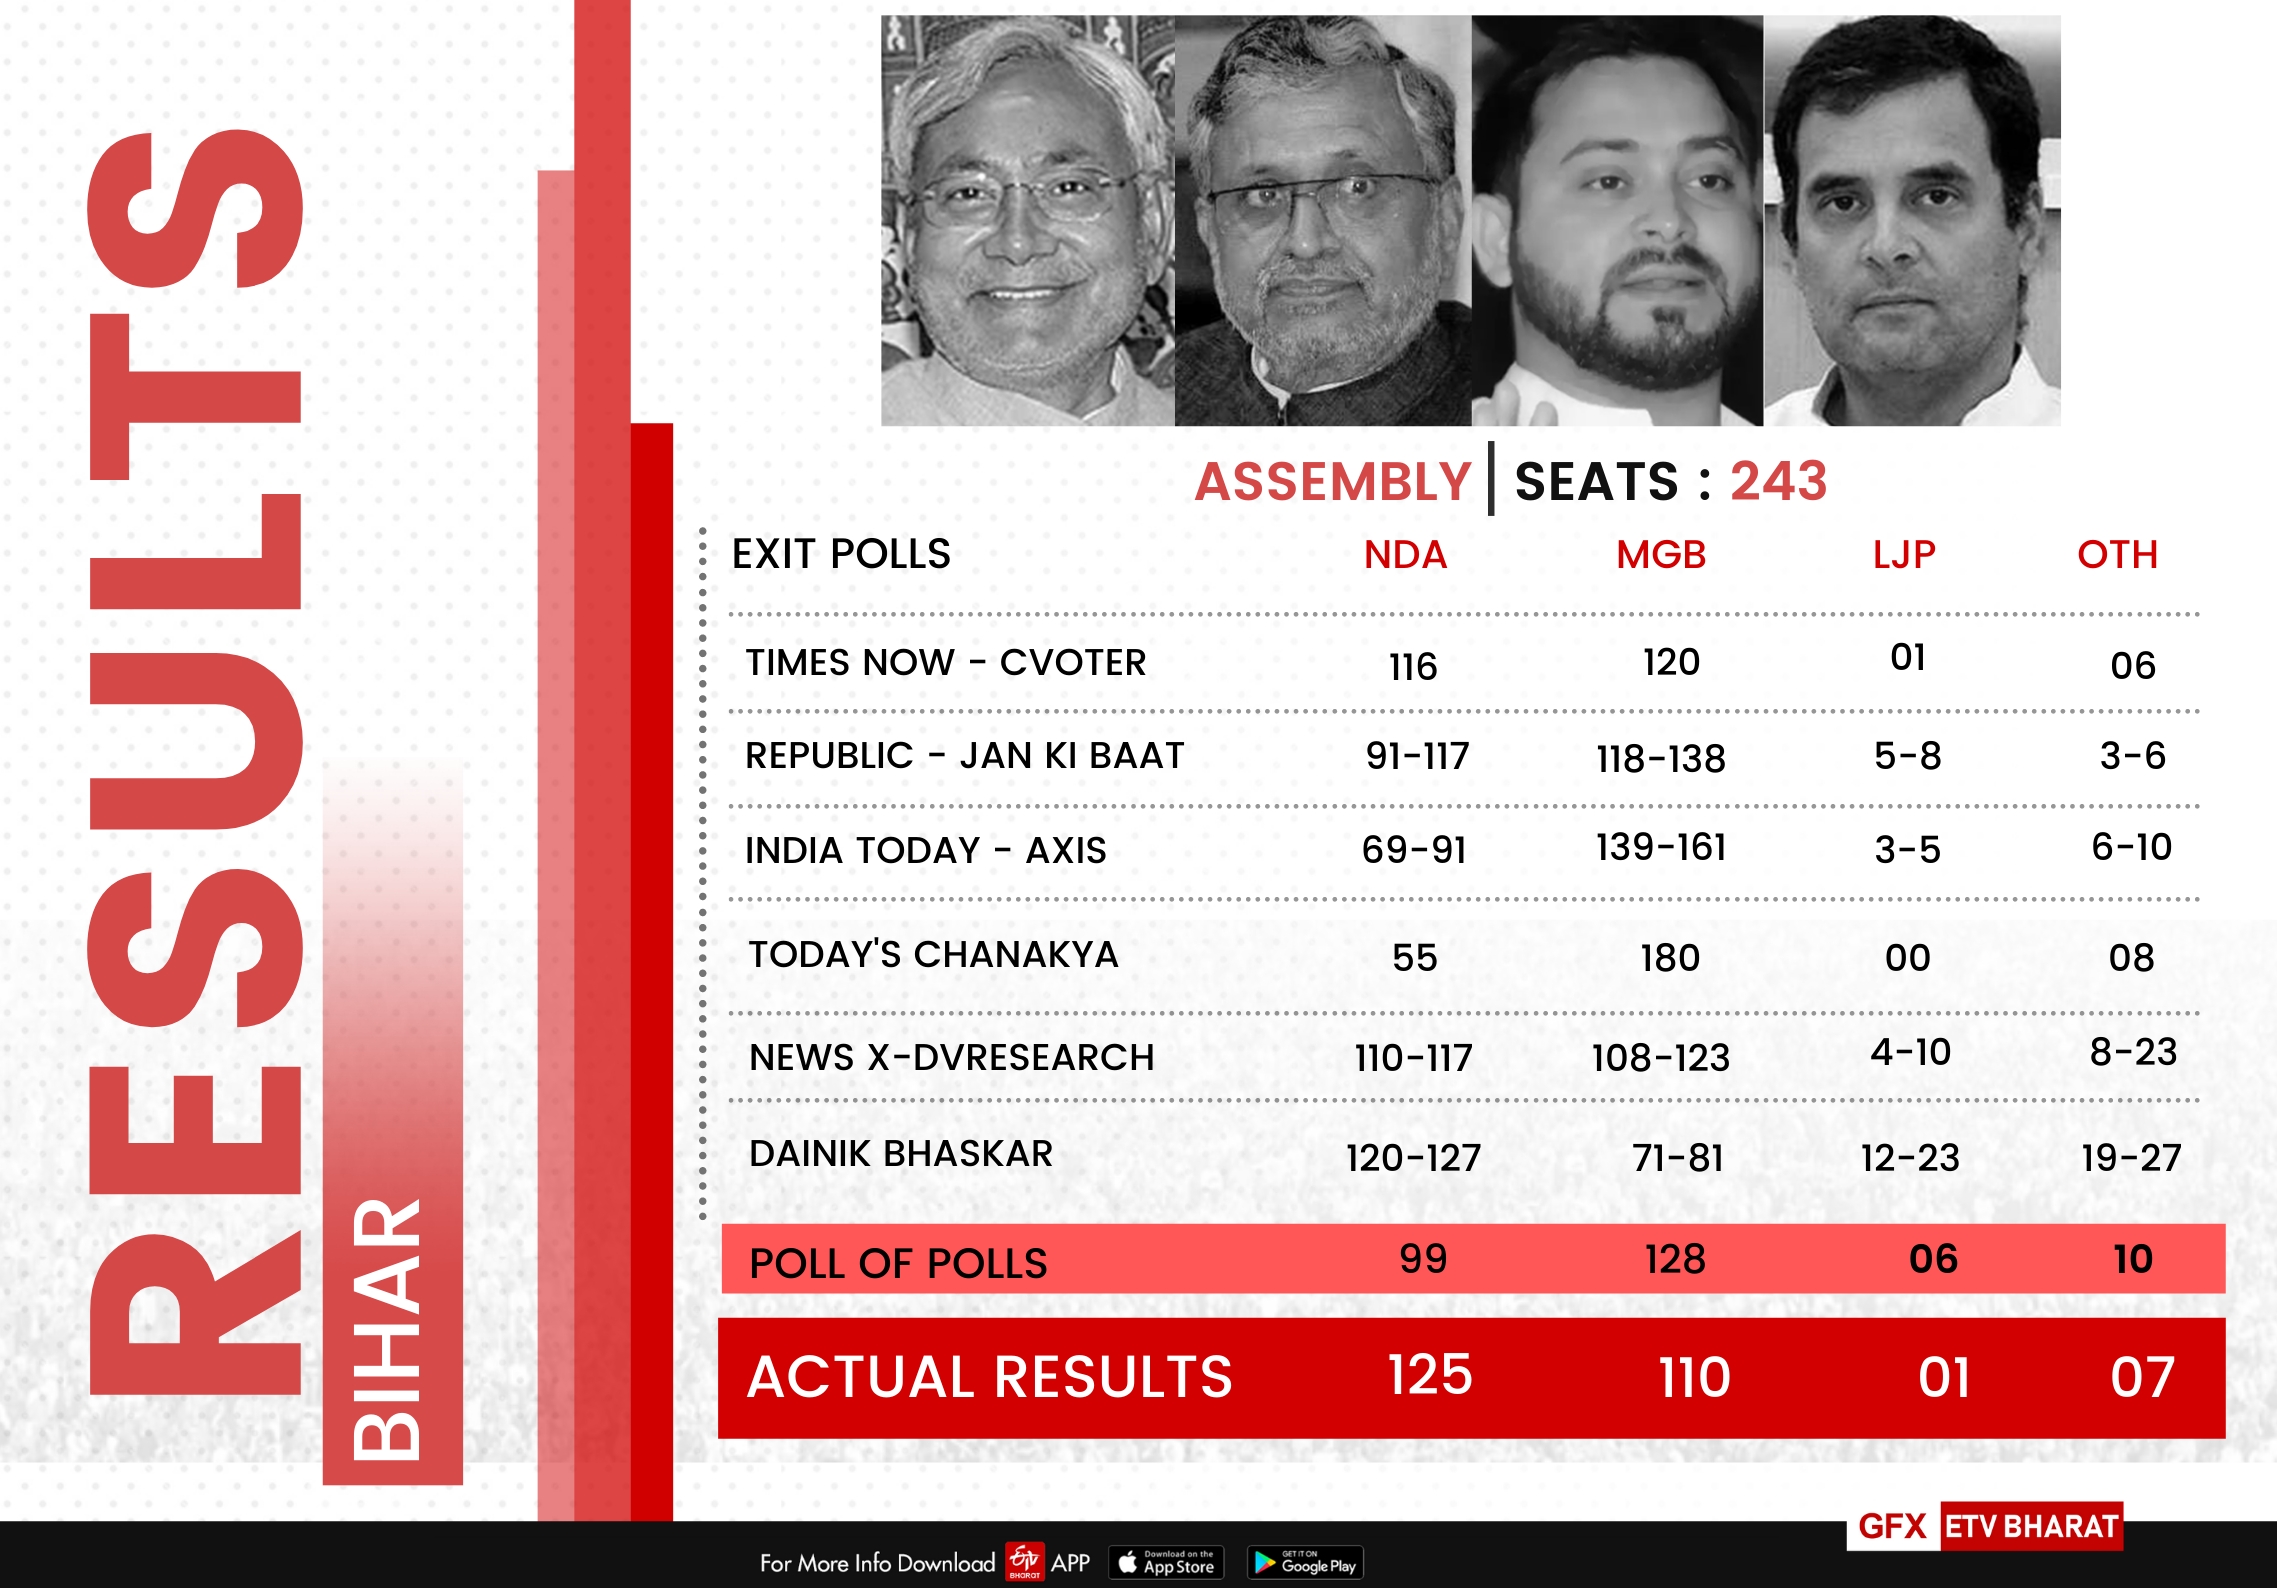 Exit Polls vs Actual Results